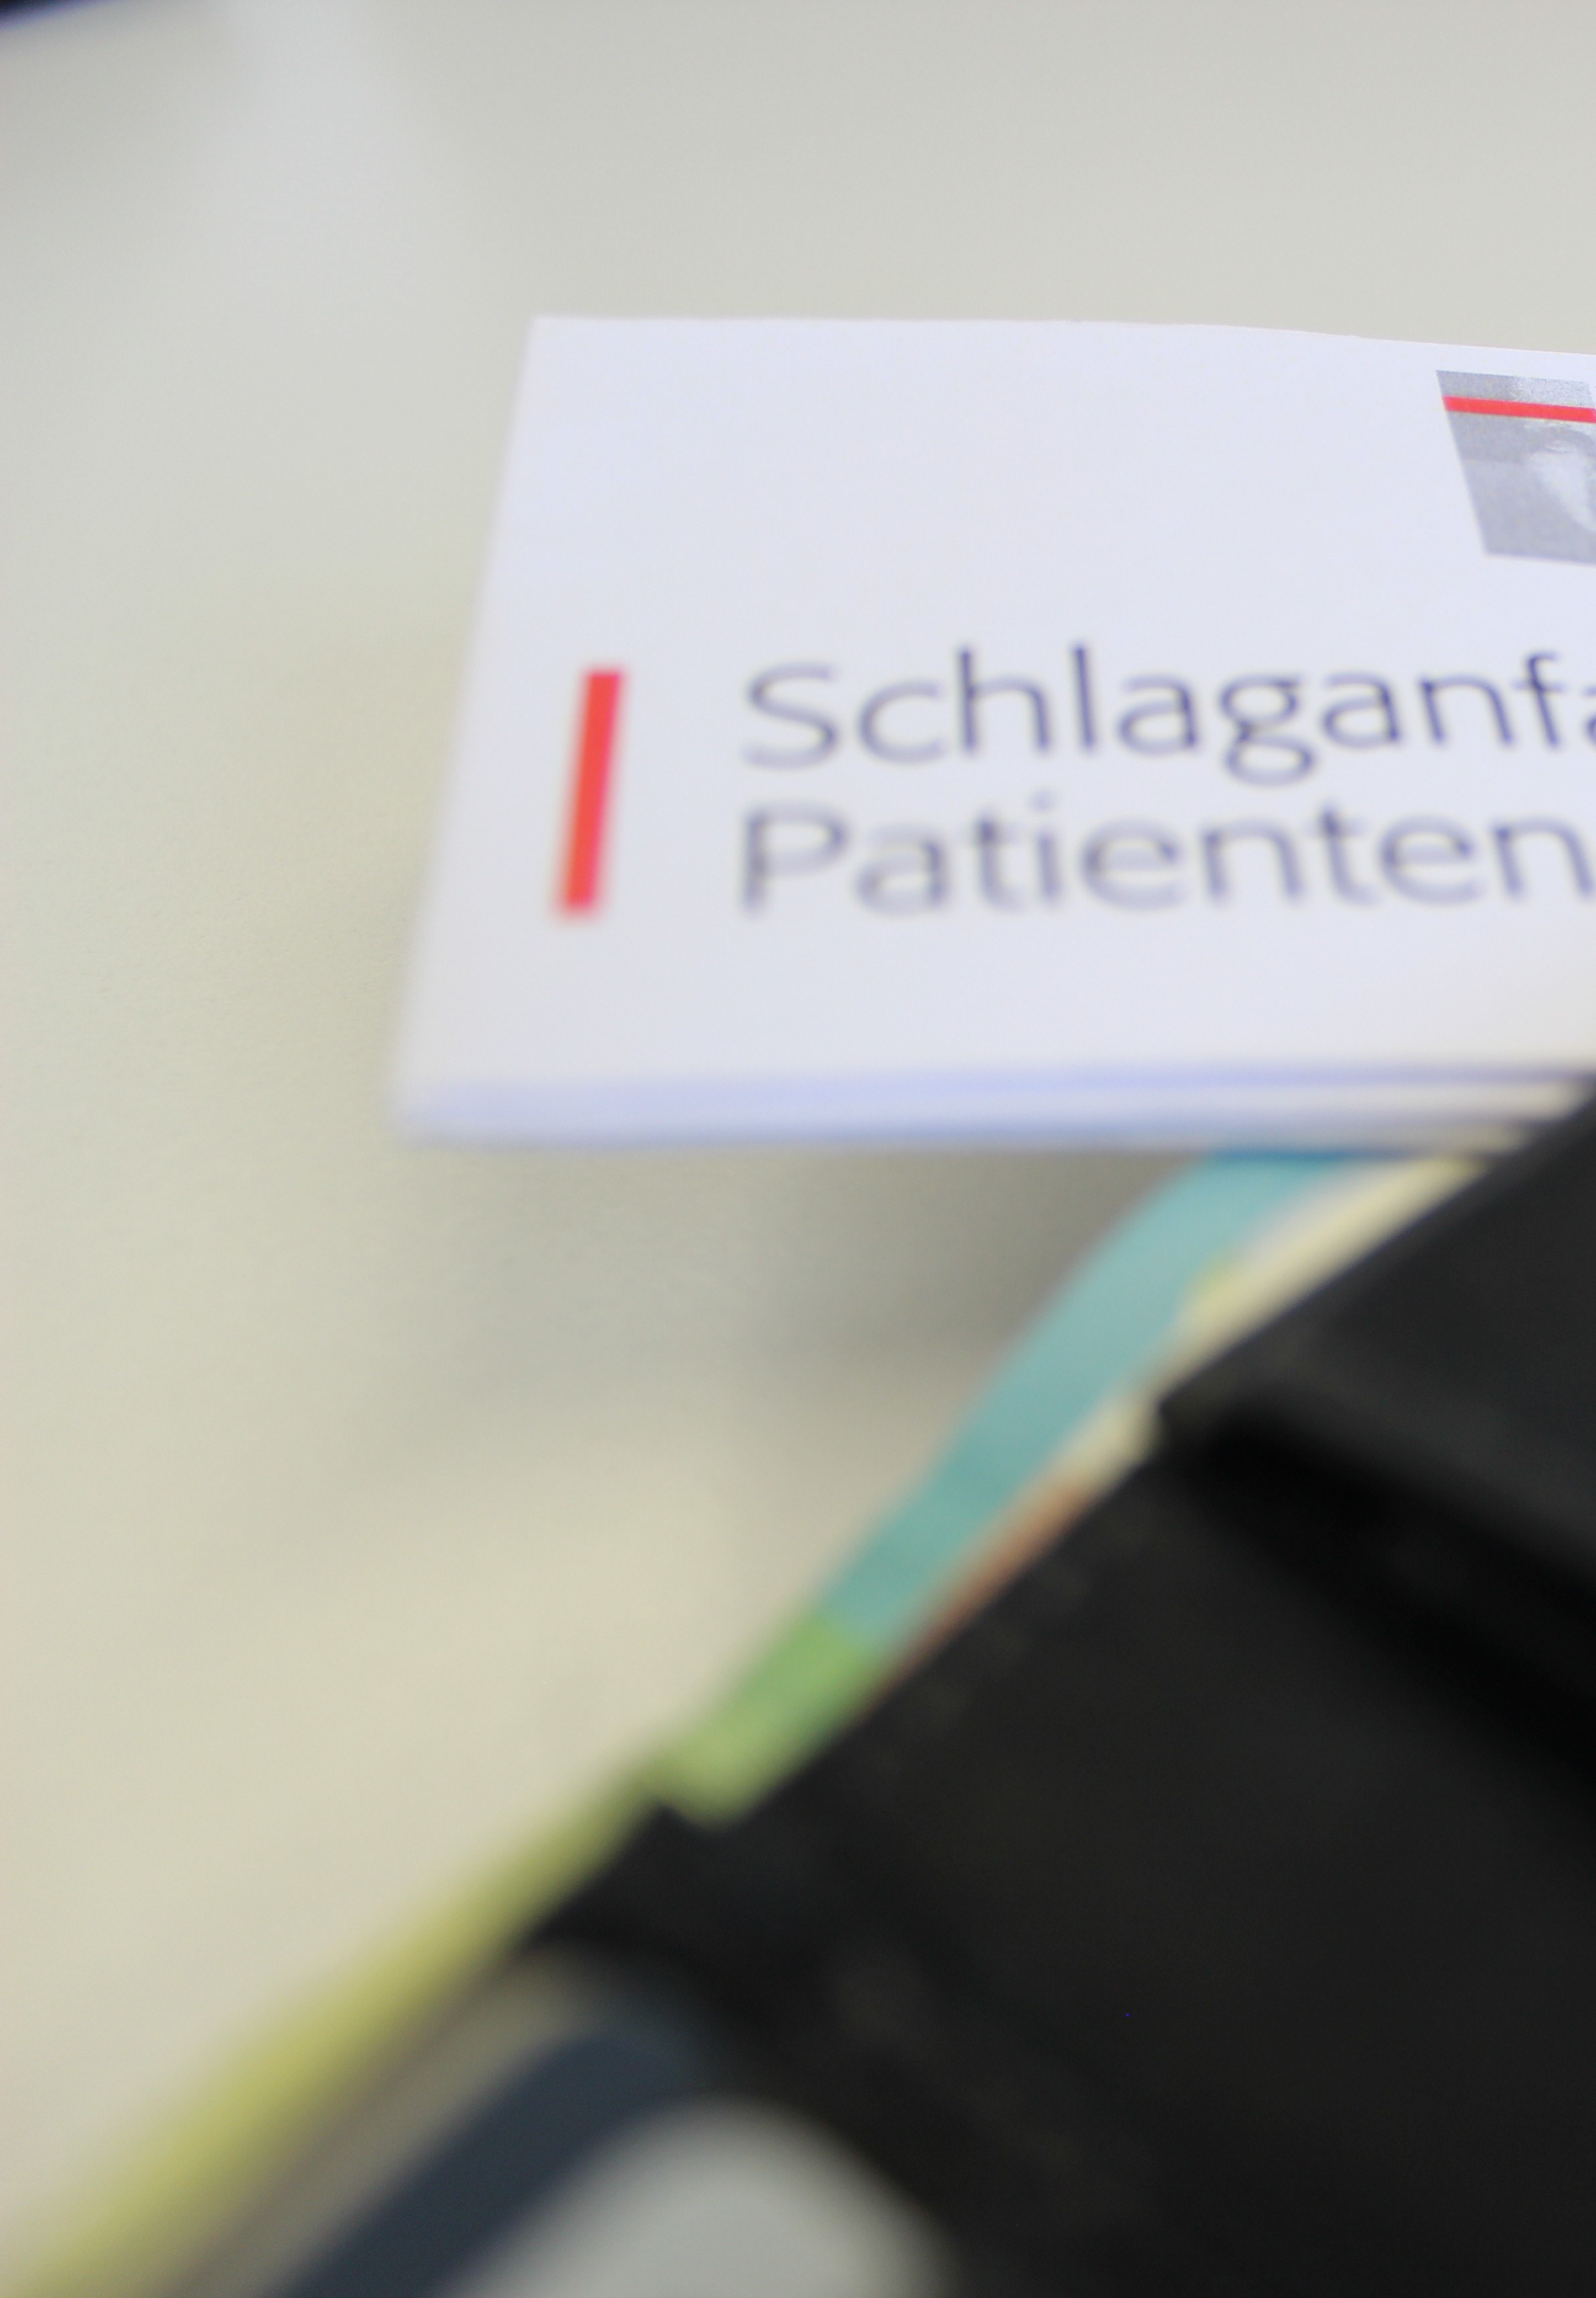 Schlaganfall-Patienten-Pass steckt in einem Portemonnaie